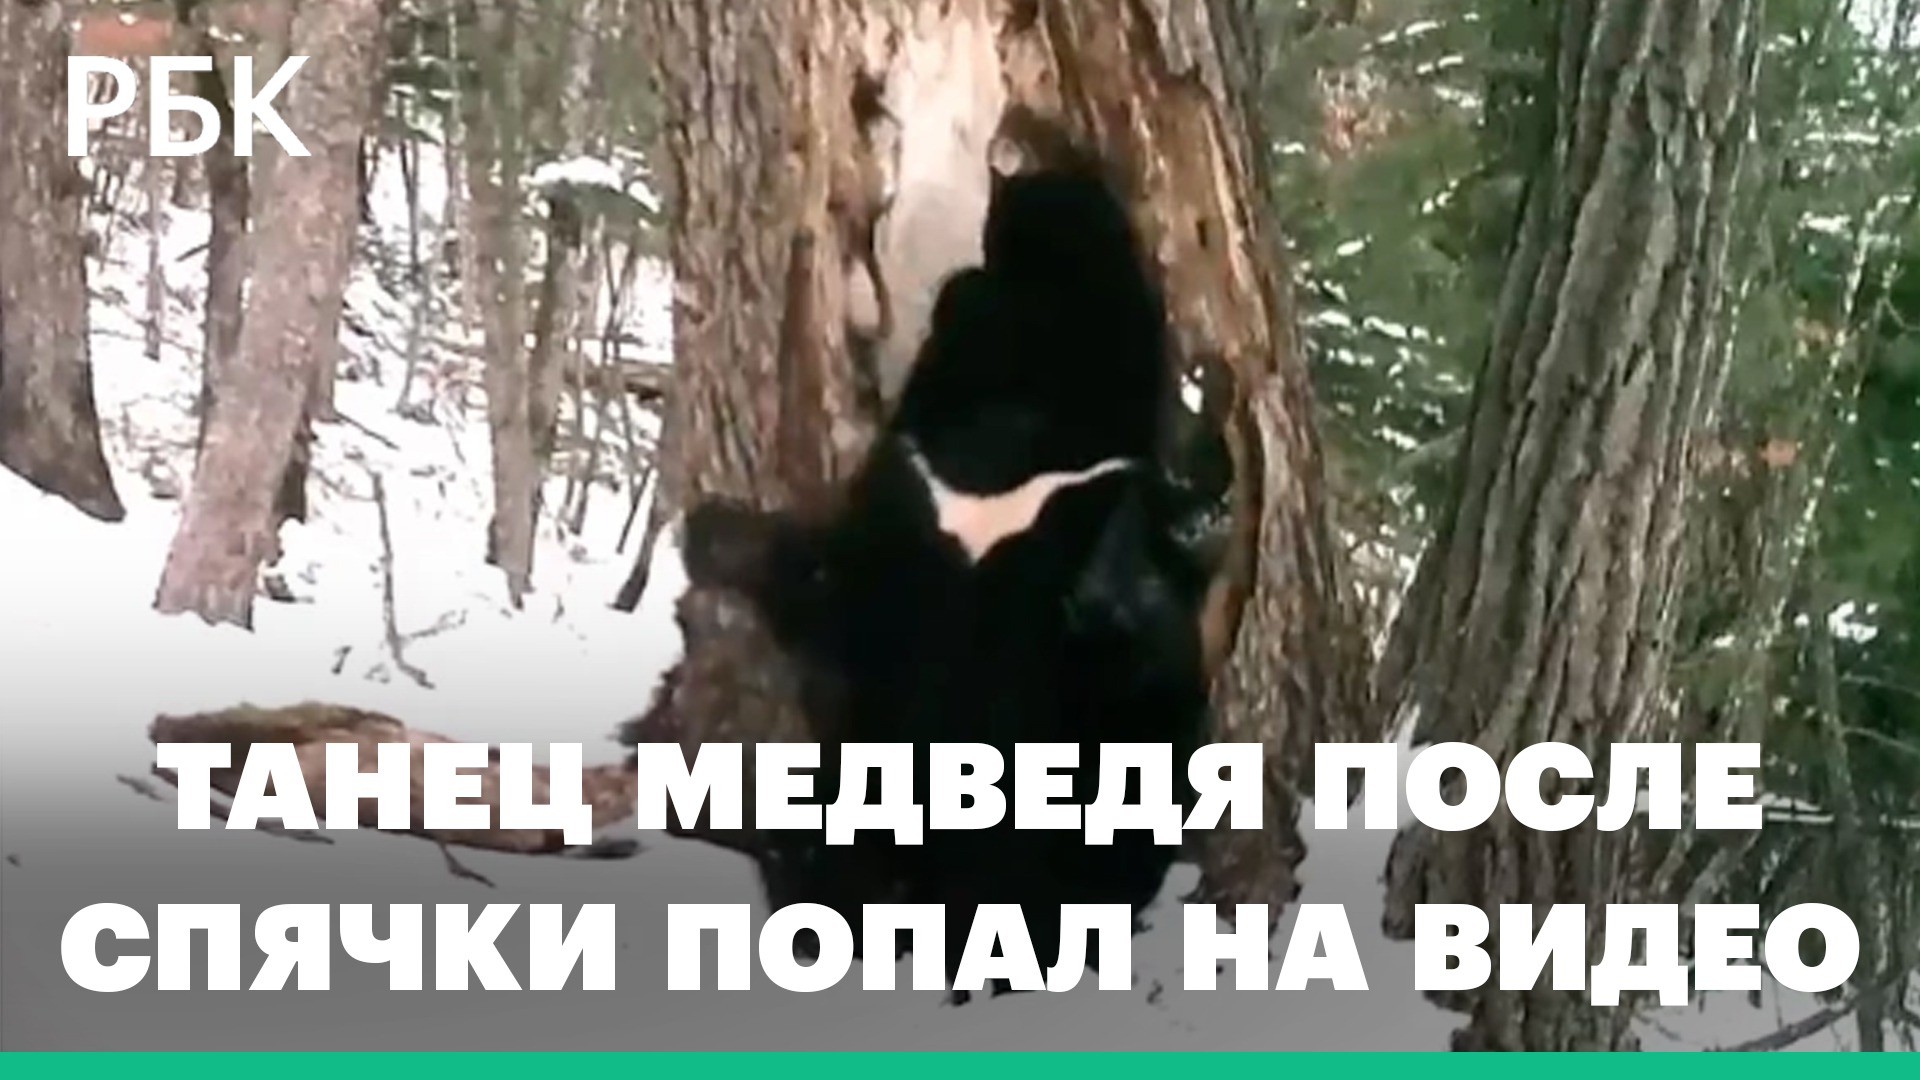 Зажигательный весенний танец медведя после спячки попал на видео